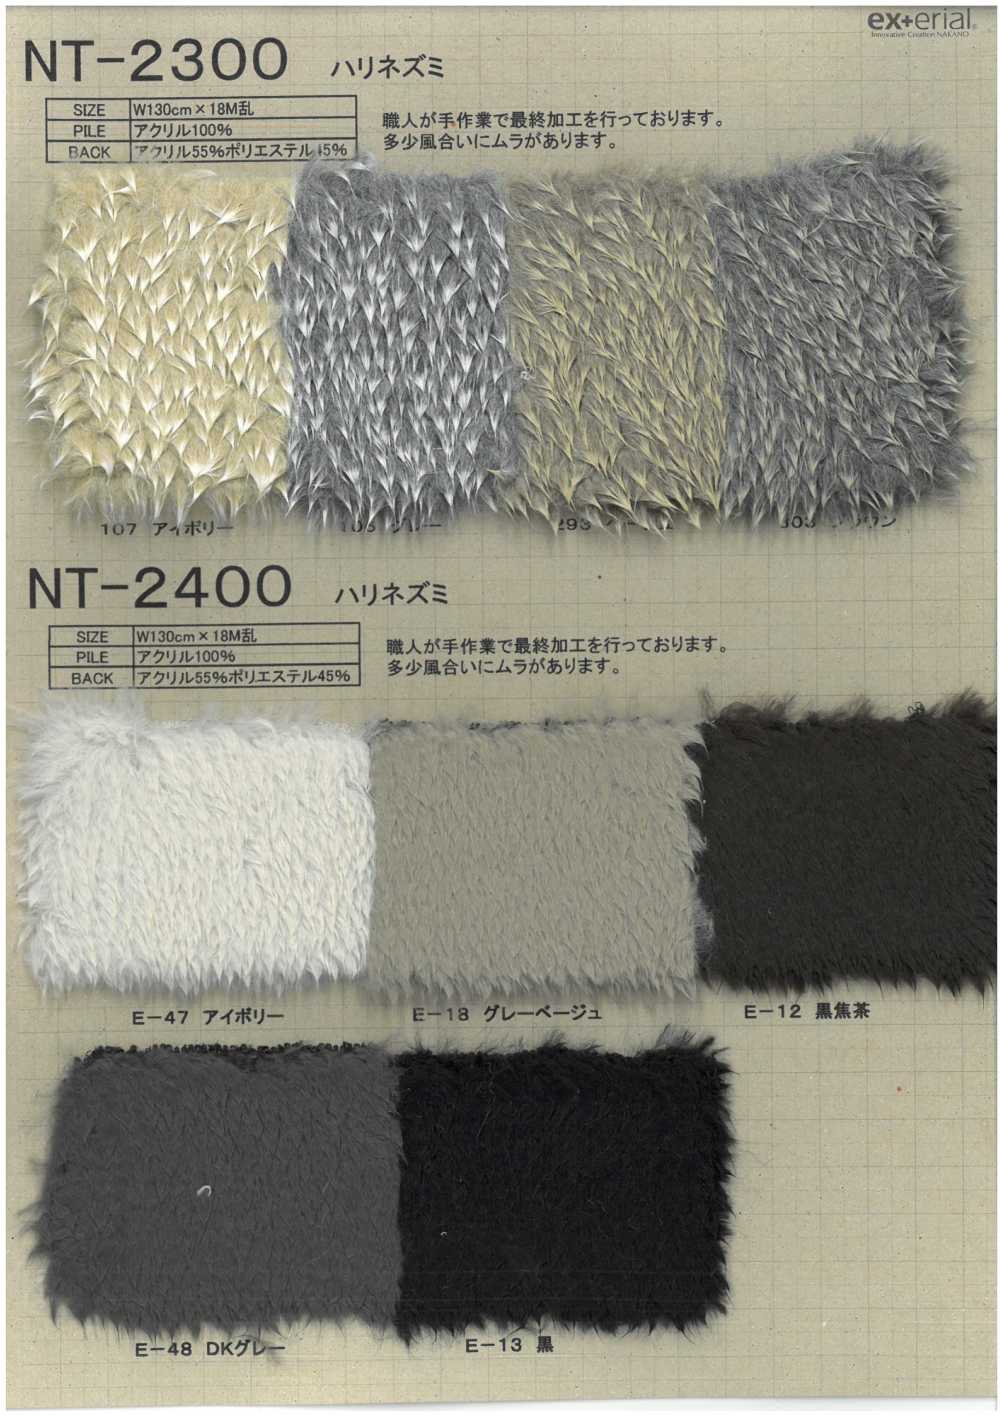 NT-2400 Piel Artesanal [erizo][Fabrica Textil] Industria De La Media Nakano